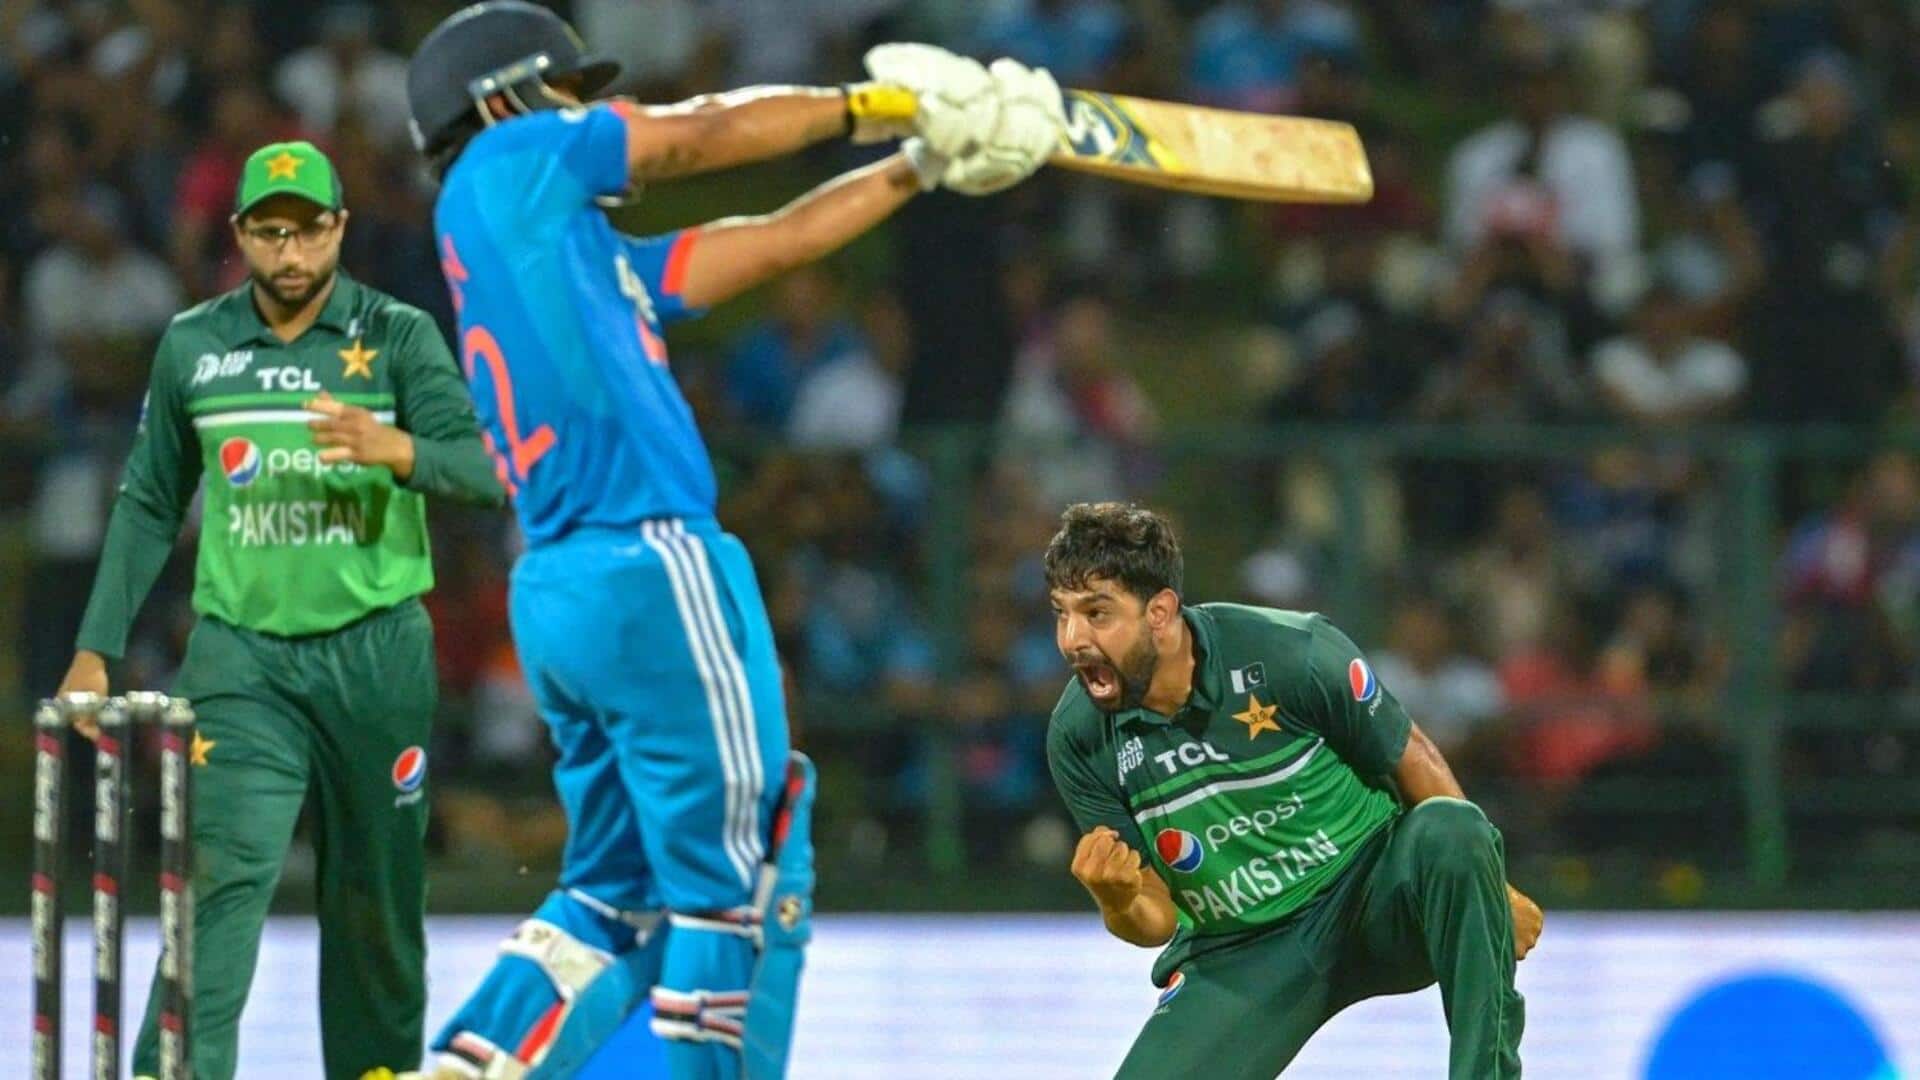 भारत के खिलाफ पहले वनडे में हारिस रऊफ की शानदार गेंदबाजी, 3 विकेट अपने नाम किए